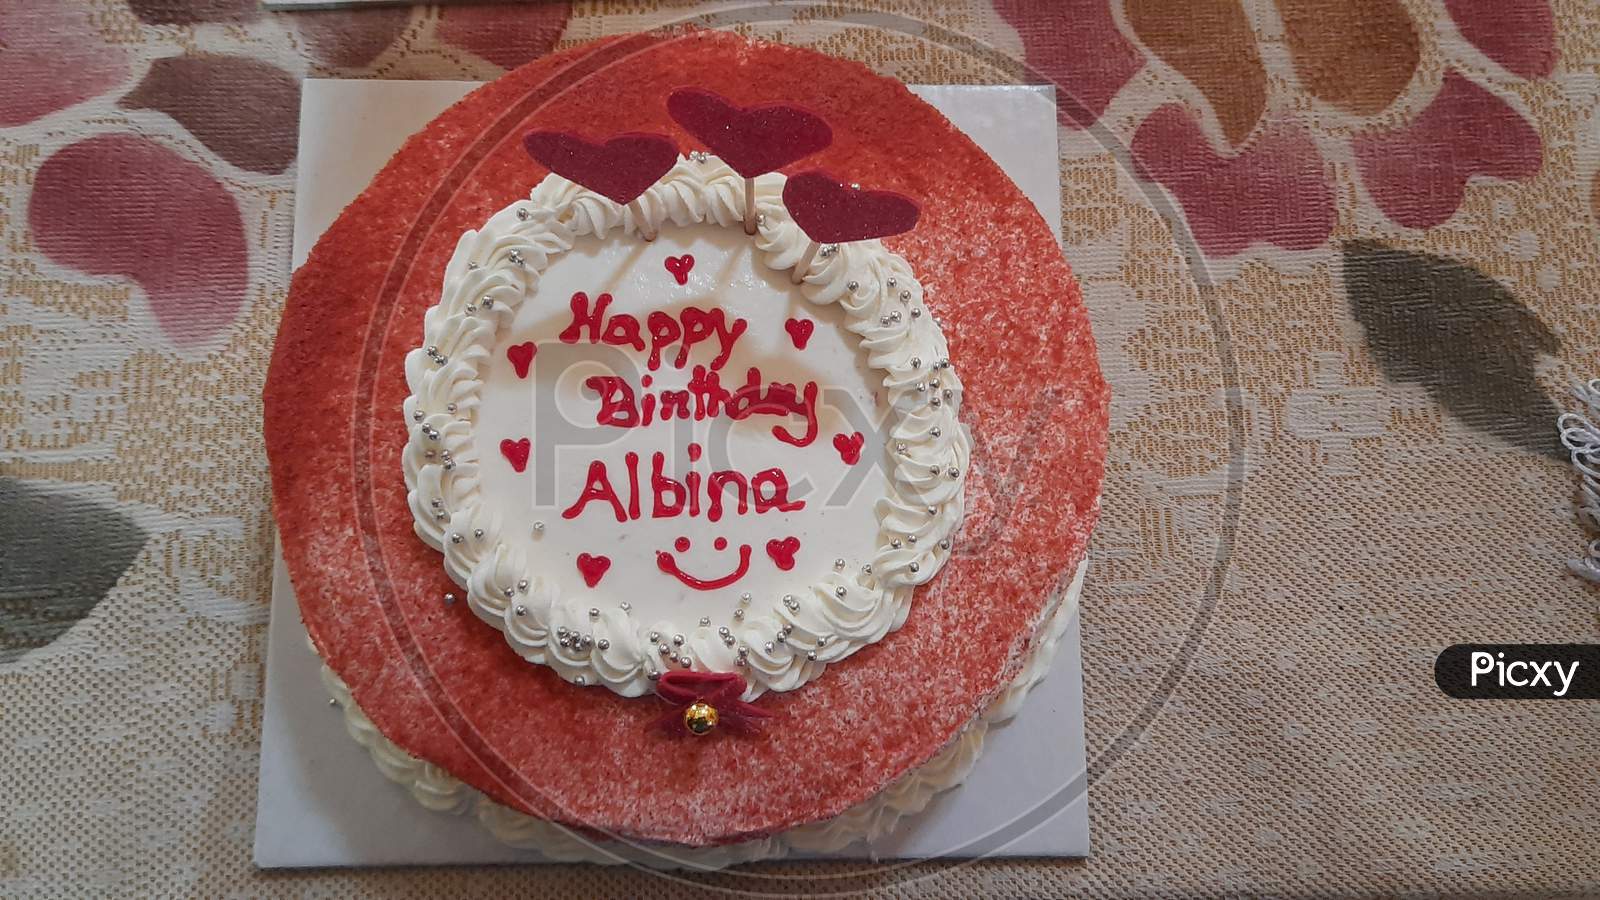 Red velvet cake for birthday